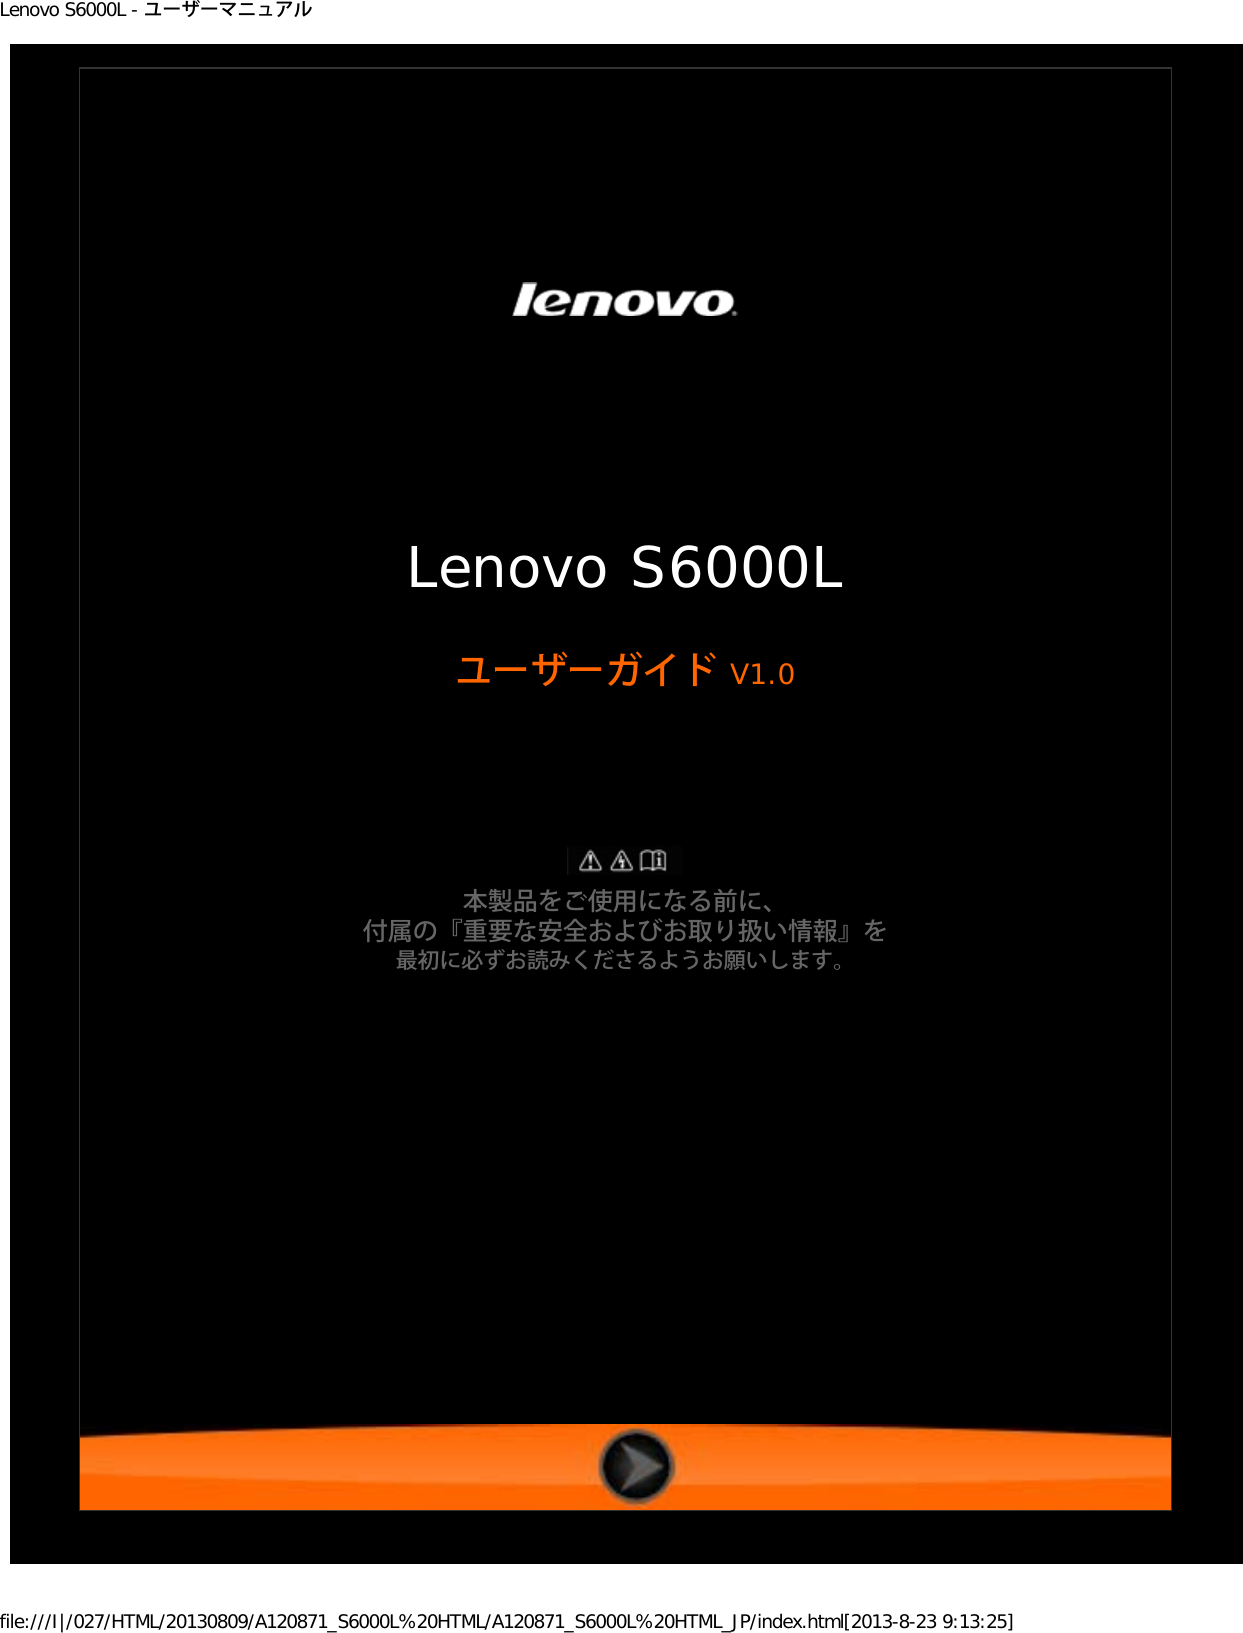 Lenovo S6000l Ug Jp V1 0 ユーザーマニュアル User Manual Japanese Guide Tab Tablet S6000l F Type Z0an